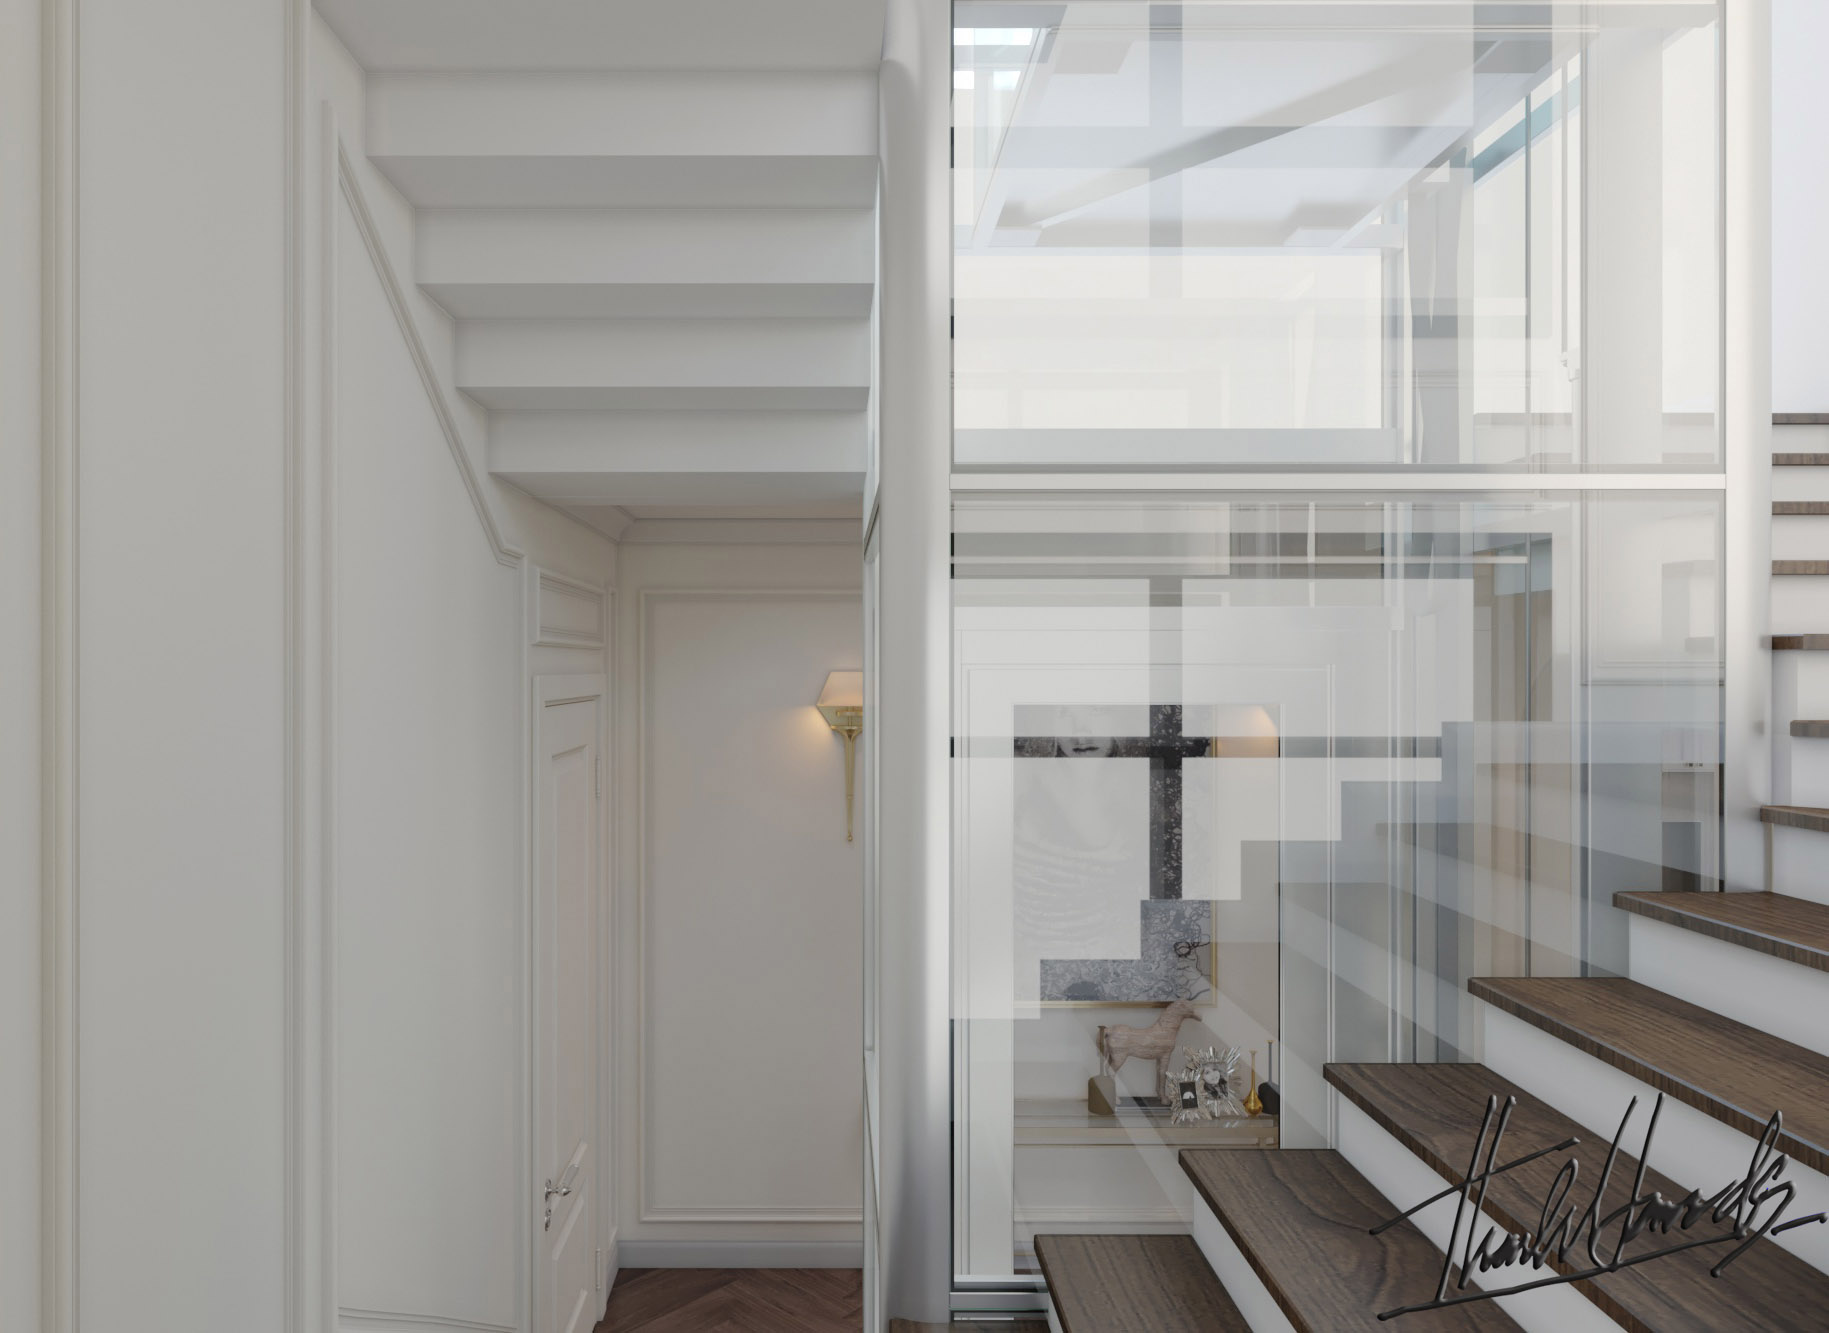 Thiết kế nội thất Biệt Thự tại Hải Phòng BIỆT THỰ MONACO - VINHOMES HP 1581395885 27